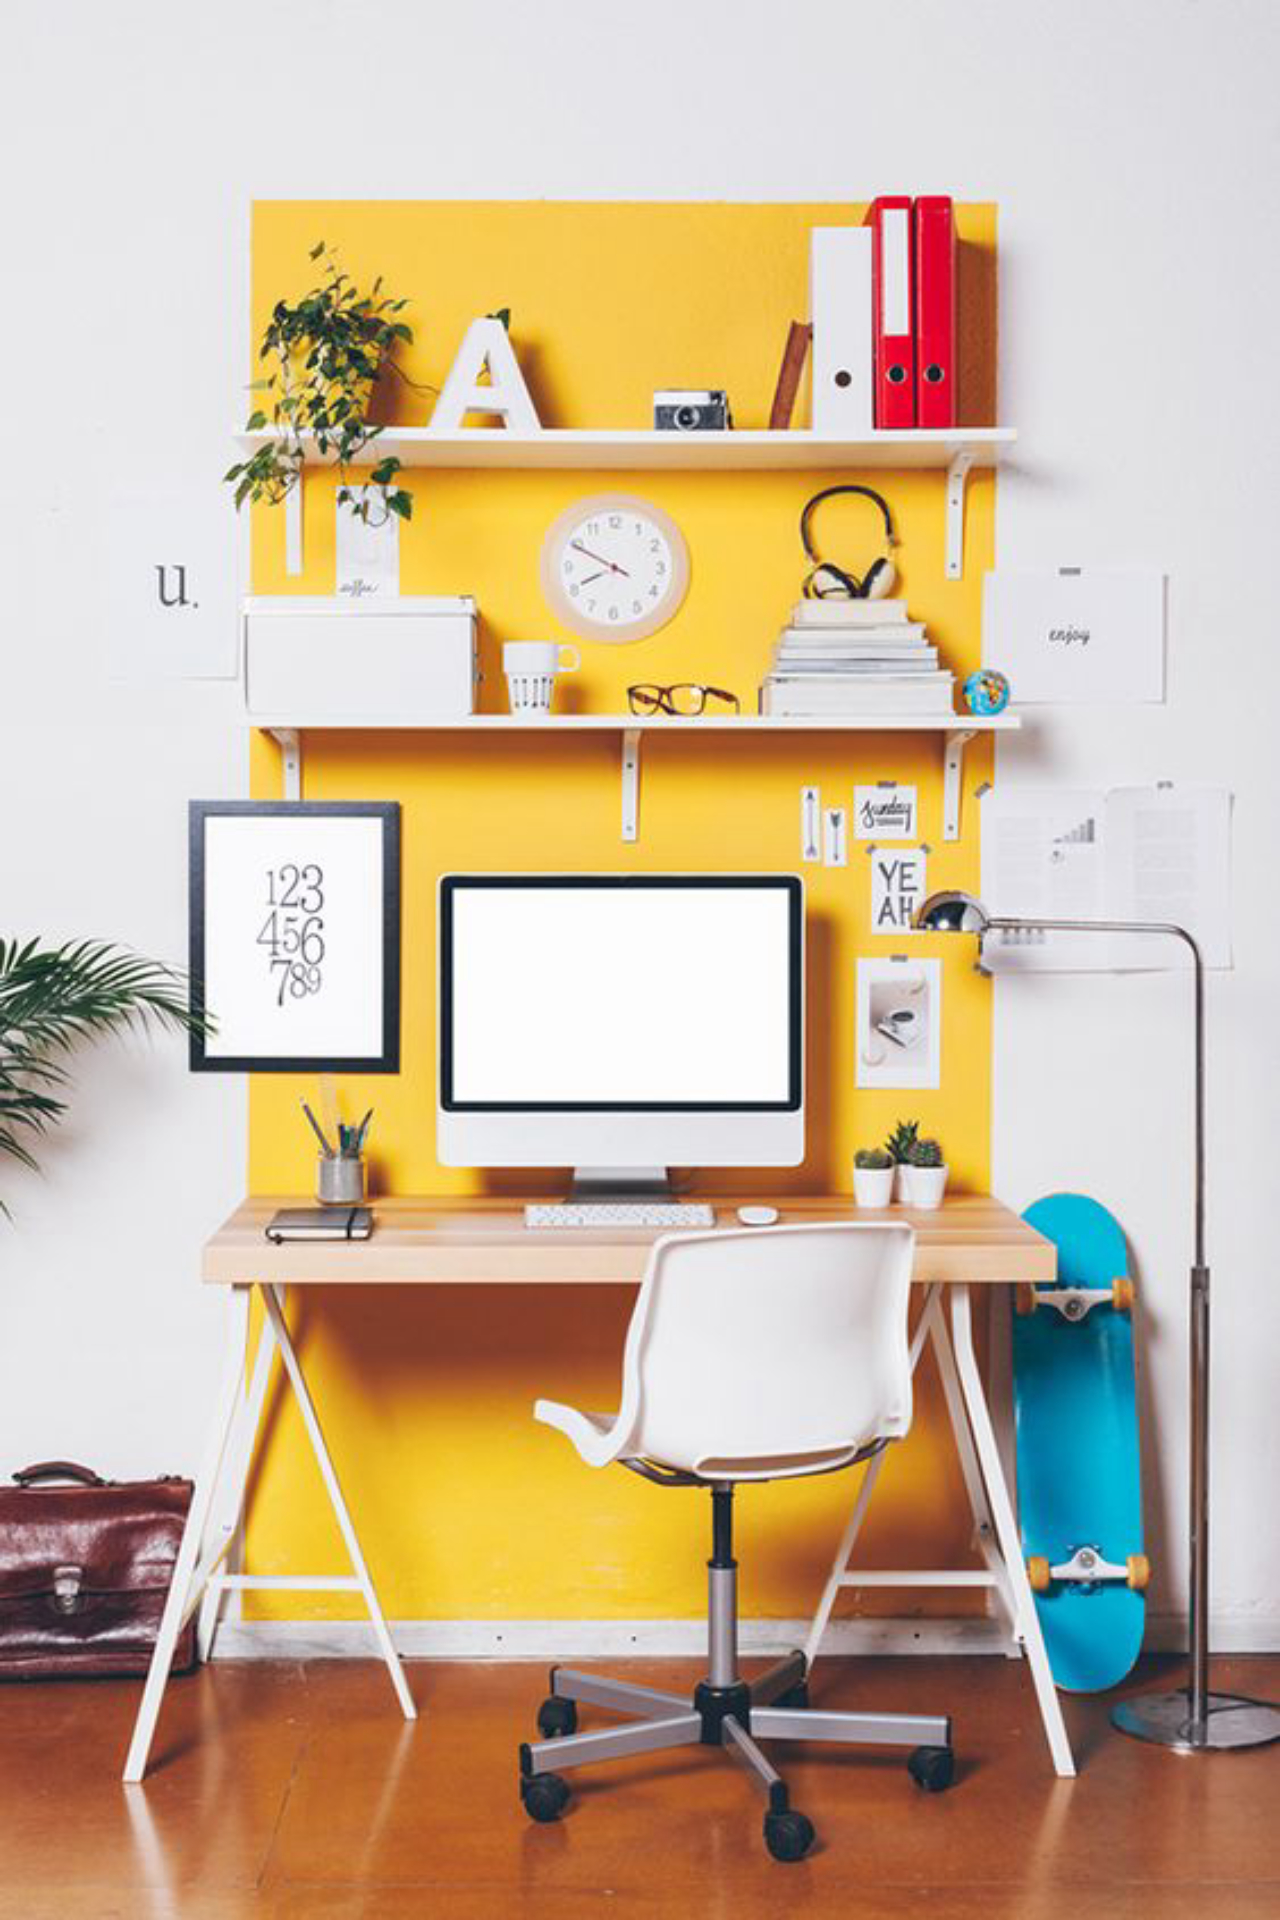 No meio da parede, a faixa amarela delimitou o espaço para o pequeno e descolado home-office. Foto: Reprodução/Pinterest